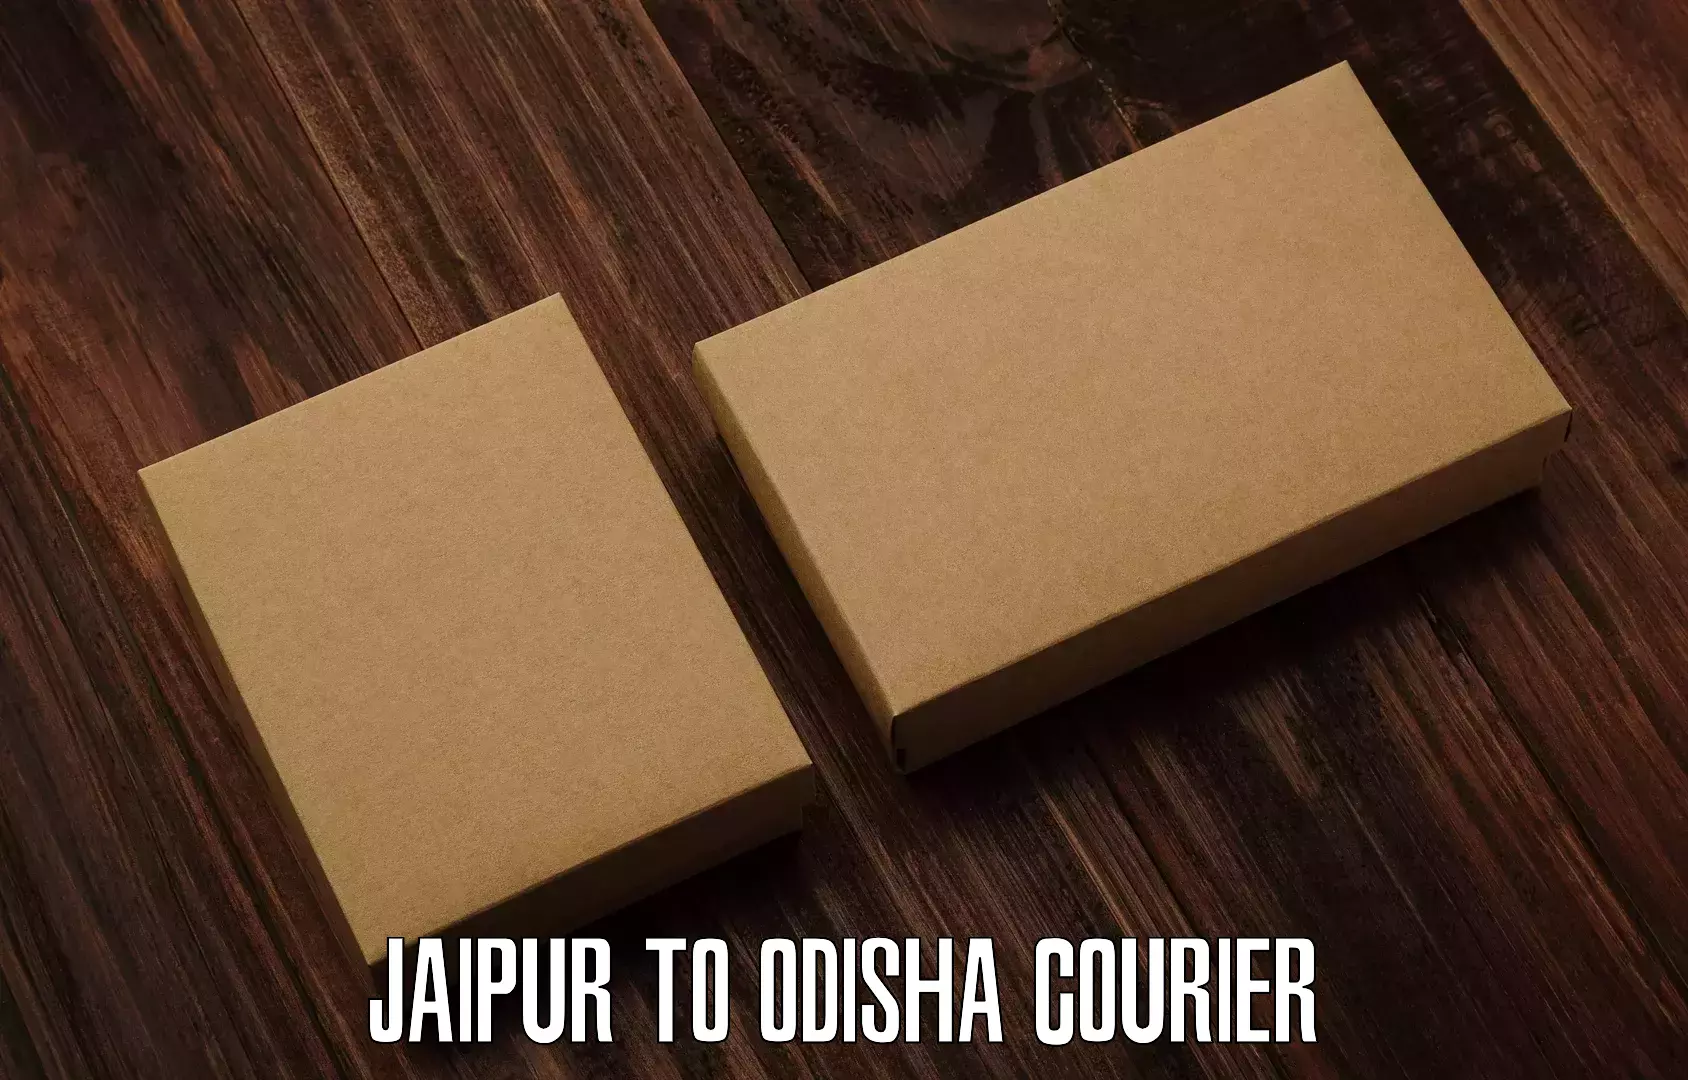 Customer-centric shipping Jaipur to Odisha